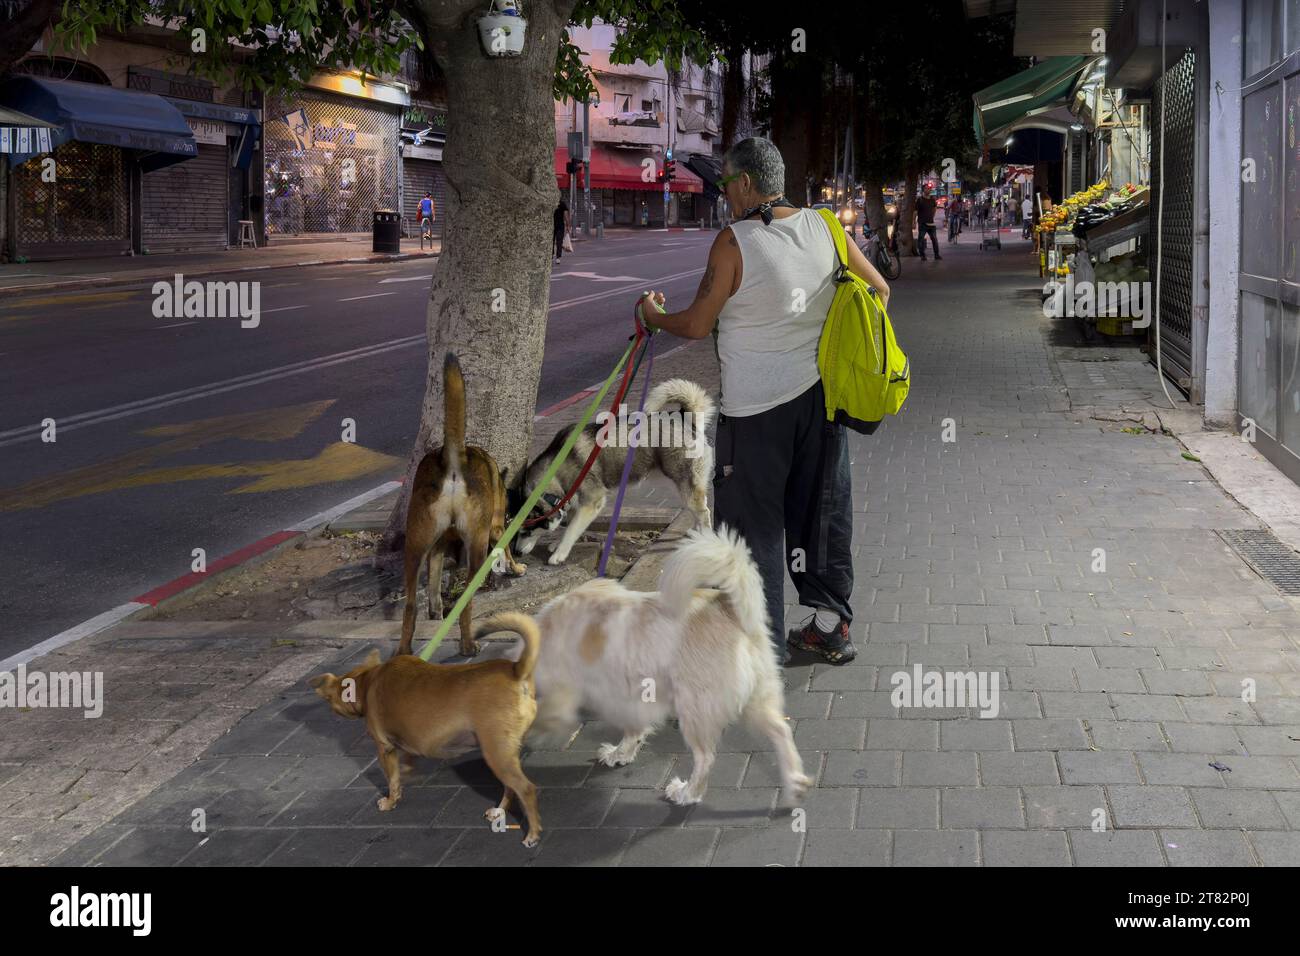 Una mujer pasea perros en la calle Ha Aliya al sur de Tel aviv Israel Foto de stock